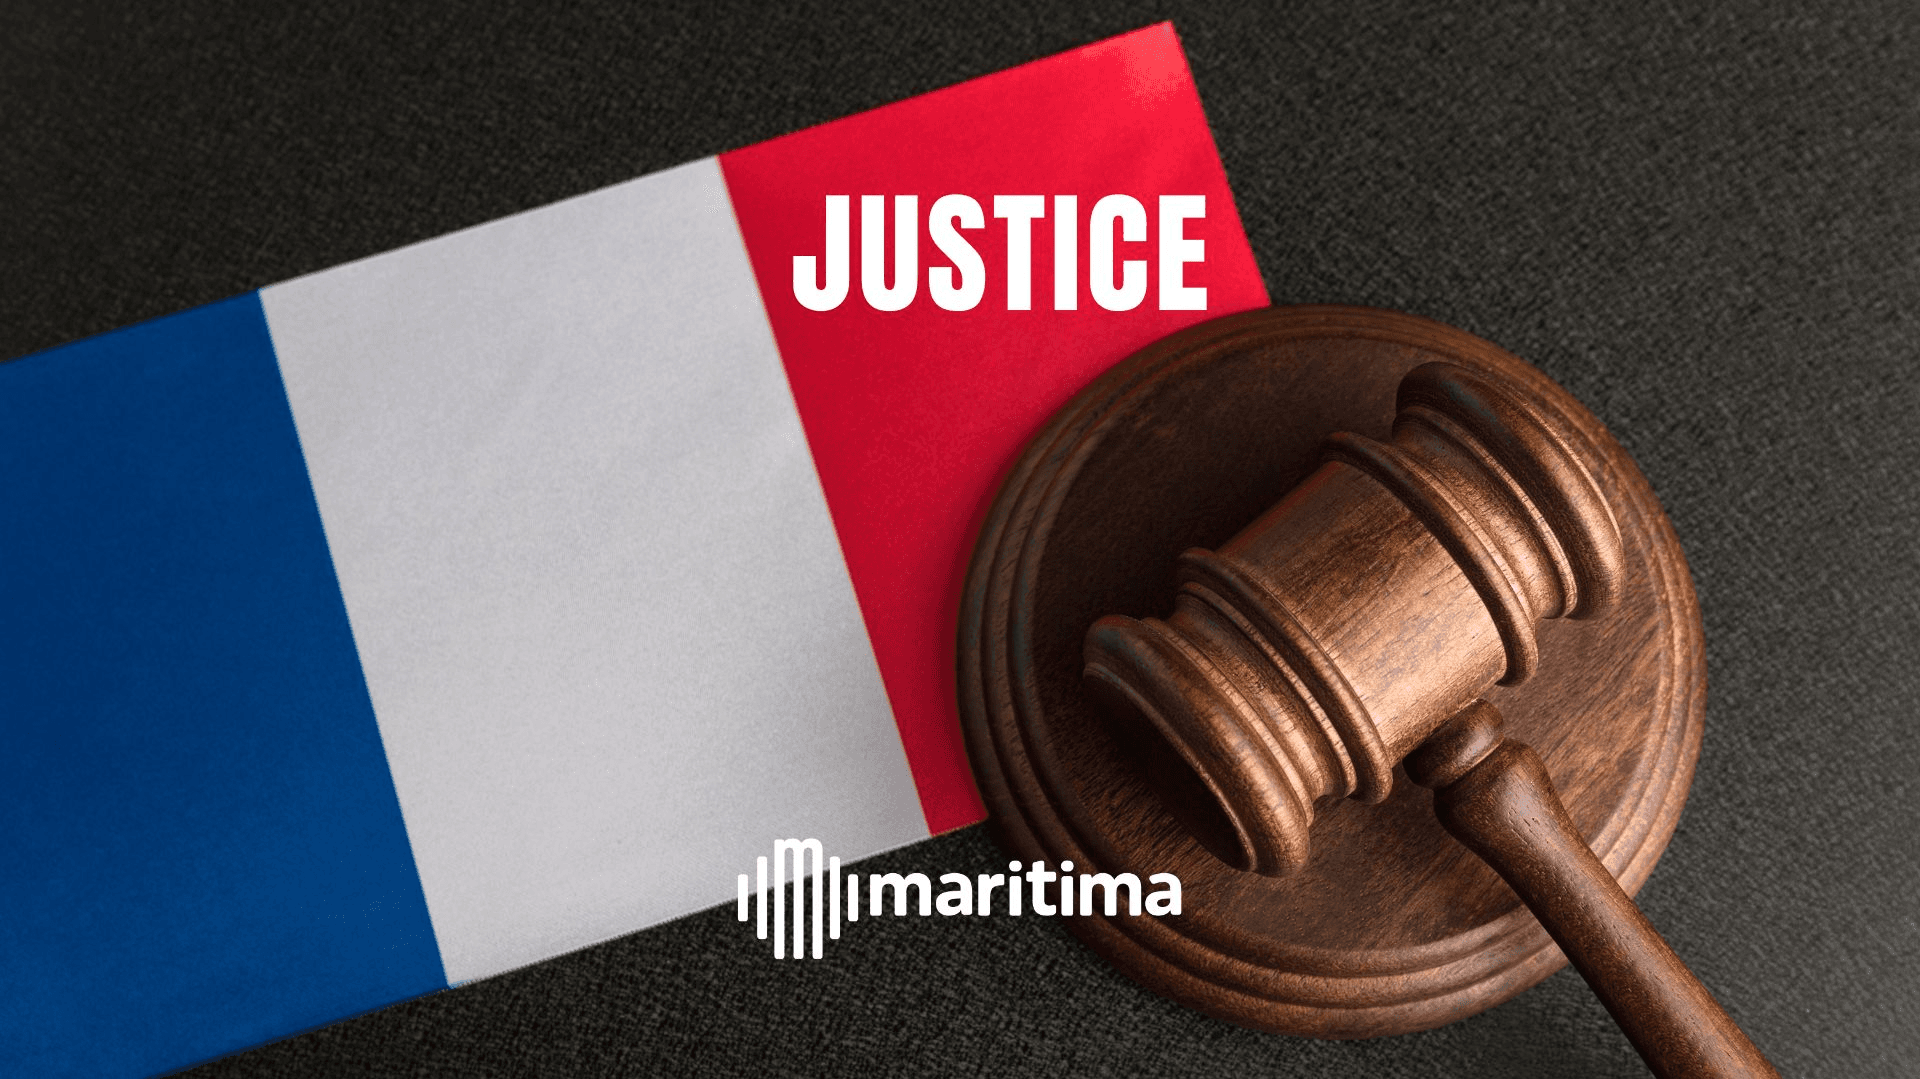 L'ancien juge d'instruction Renaud Van Ruymbeke est mort :  "La France perd un grand magistrat" 